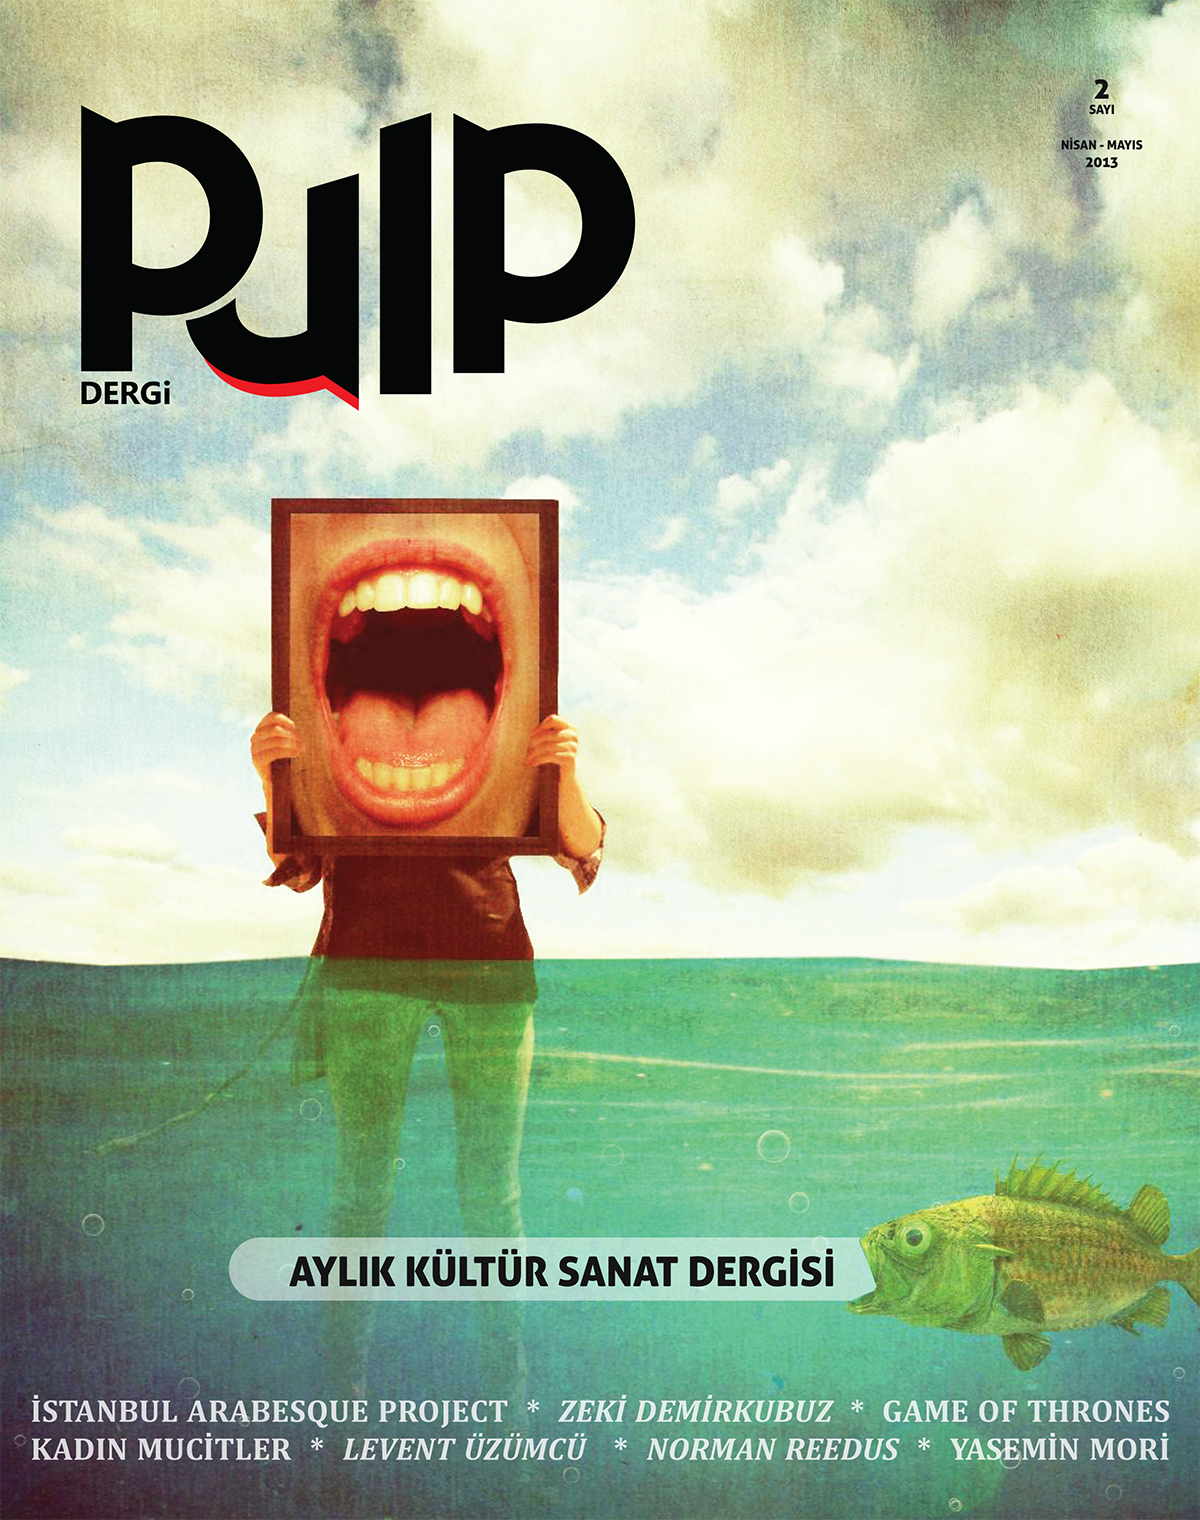 PULP MAGAZINE magazine pulp dergi pulp culture art Art Magazine